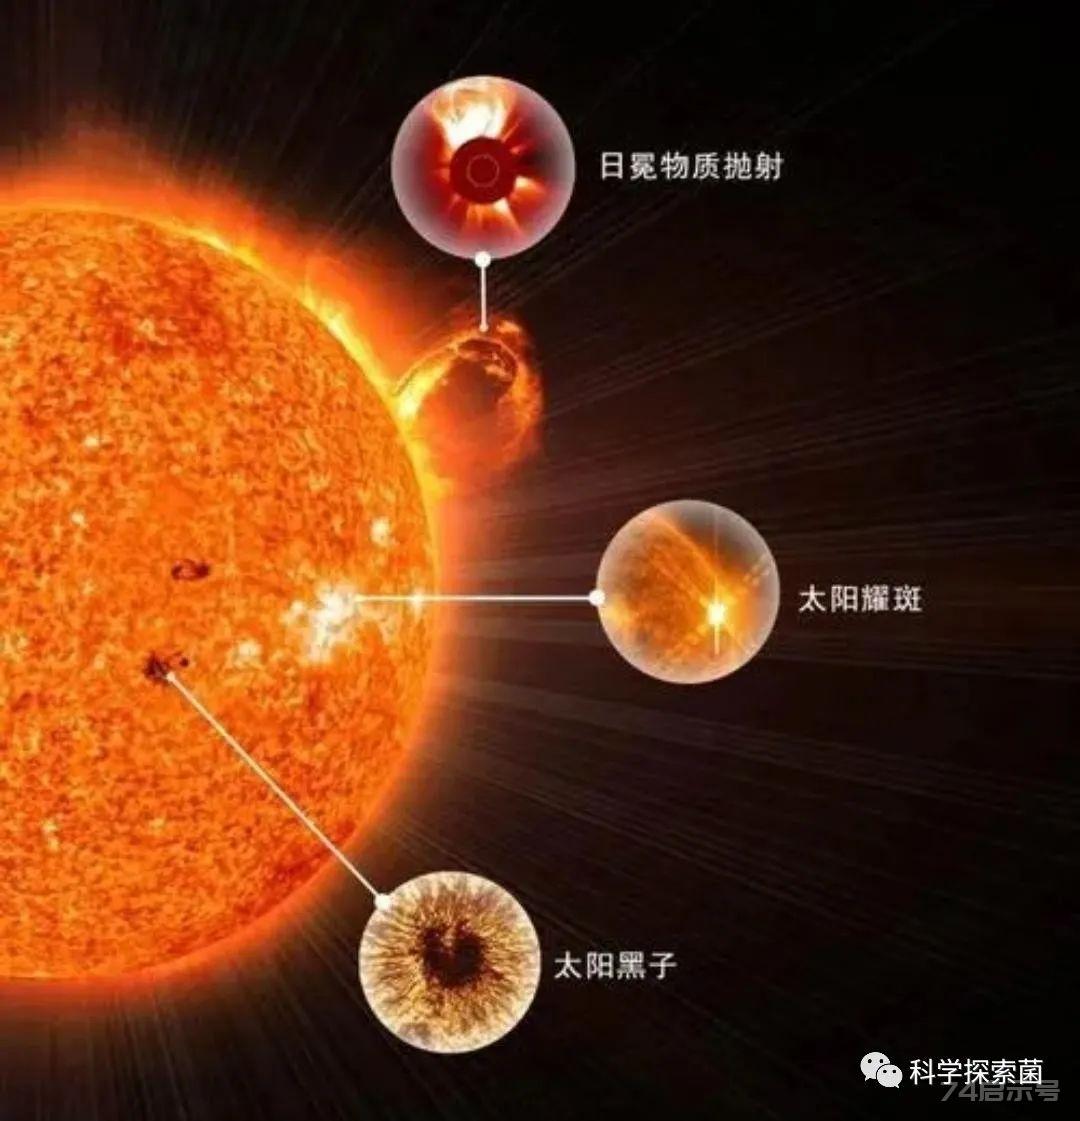 太阳活动异常，部分卫星加速坠落，出现比地球大的黑子，危险信号？